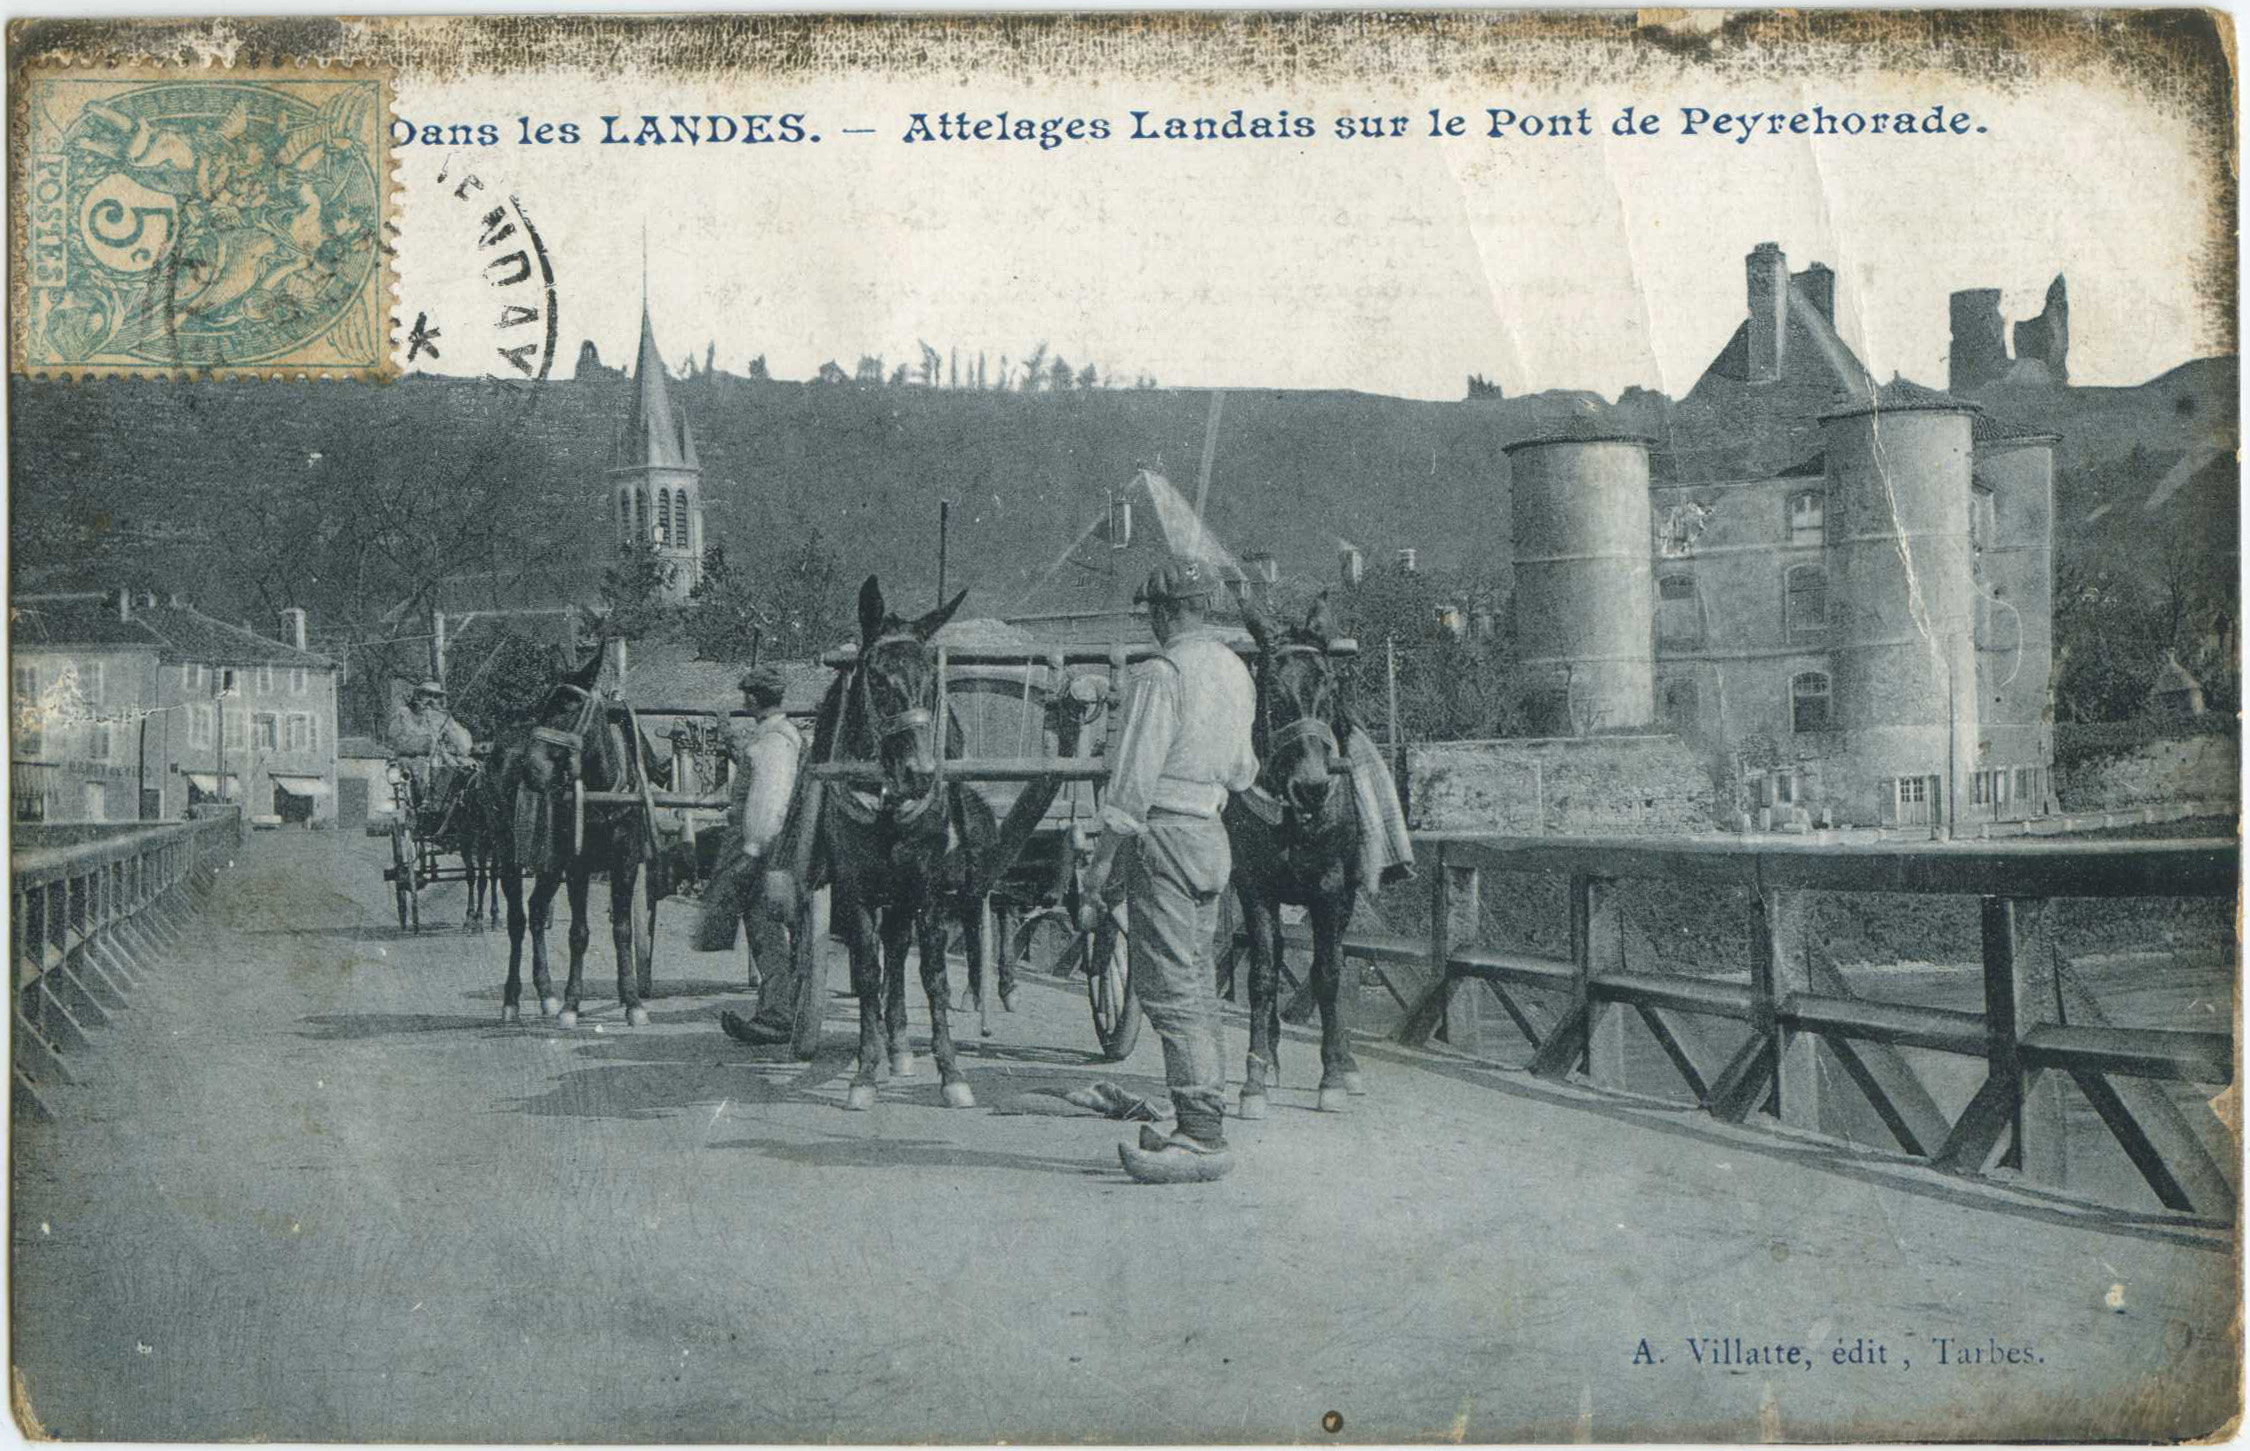 Peyrehorade - Attelages Landais sur le Pont de Peyrehorade